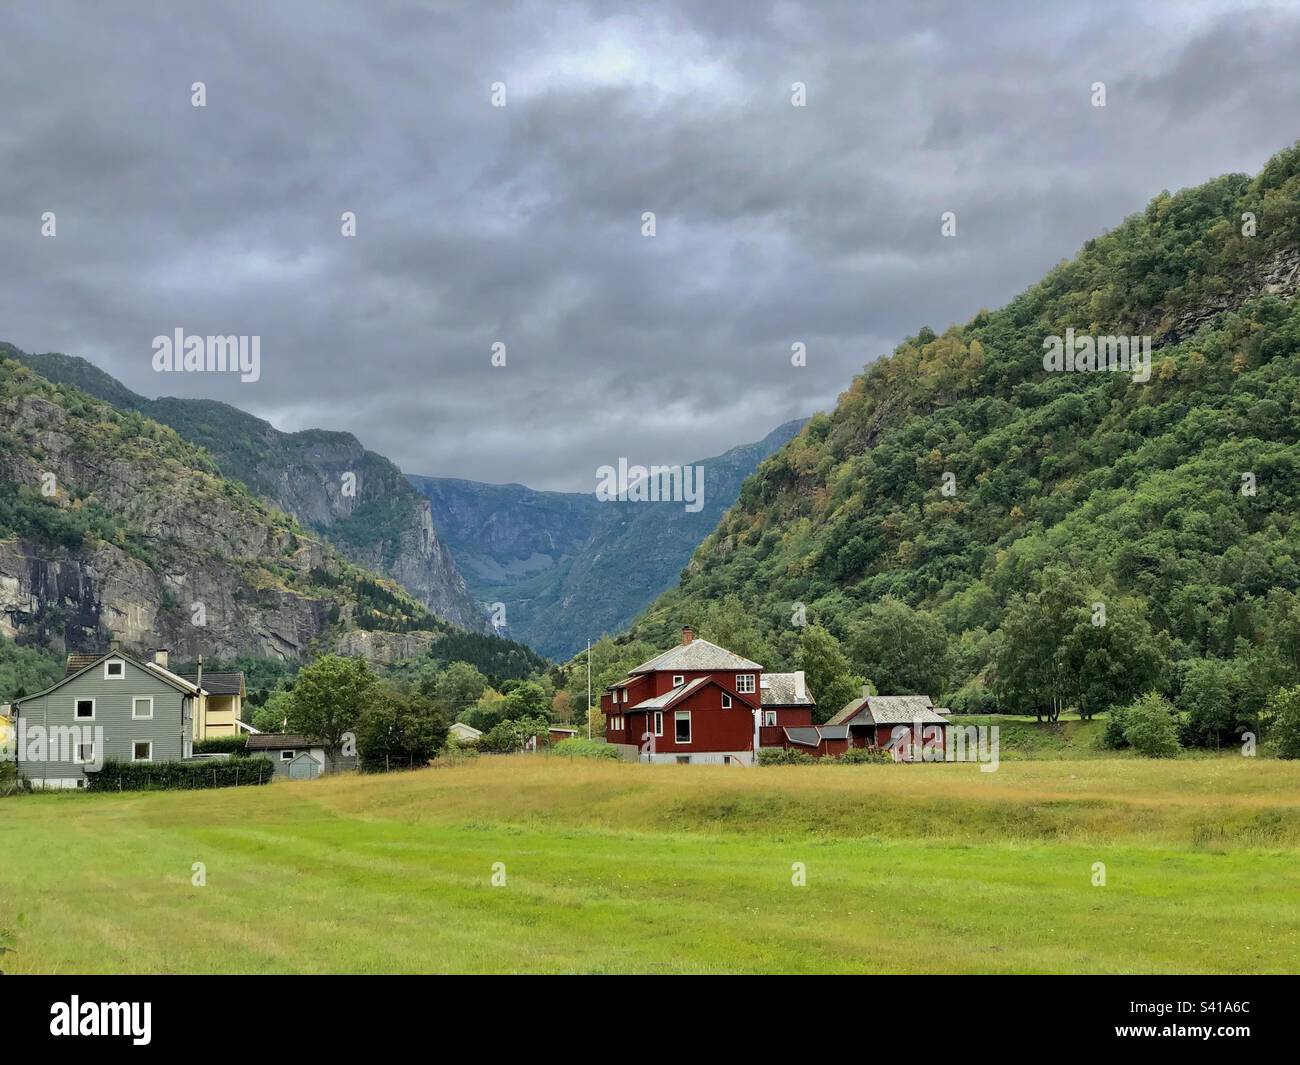 Paysage norvégien avec maisons en bois norvégiennes typiques Banque D'Images